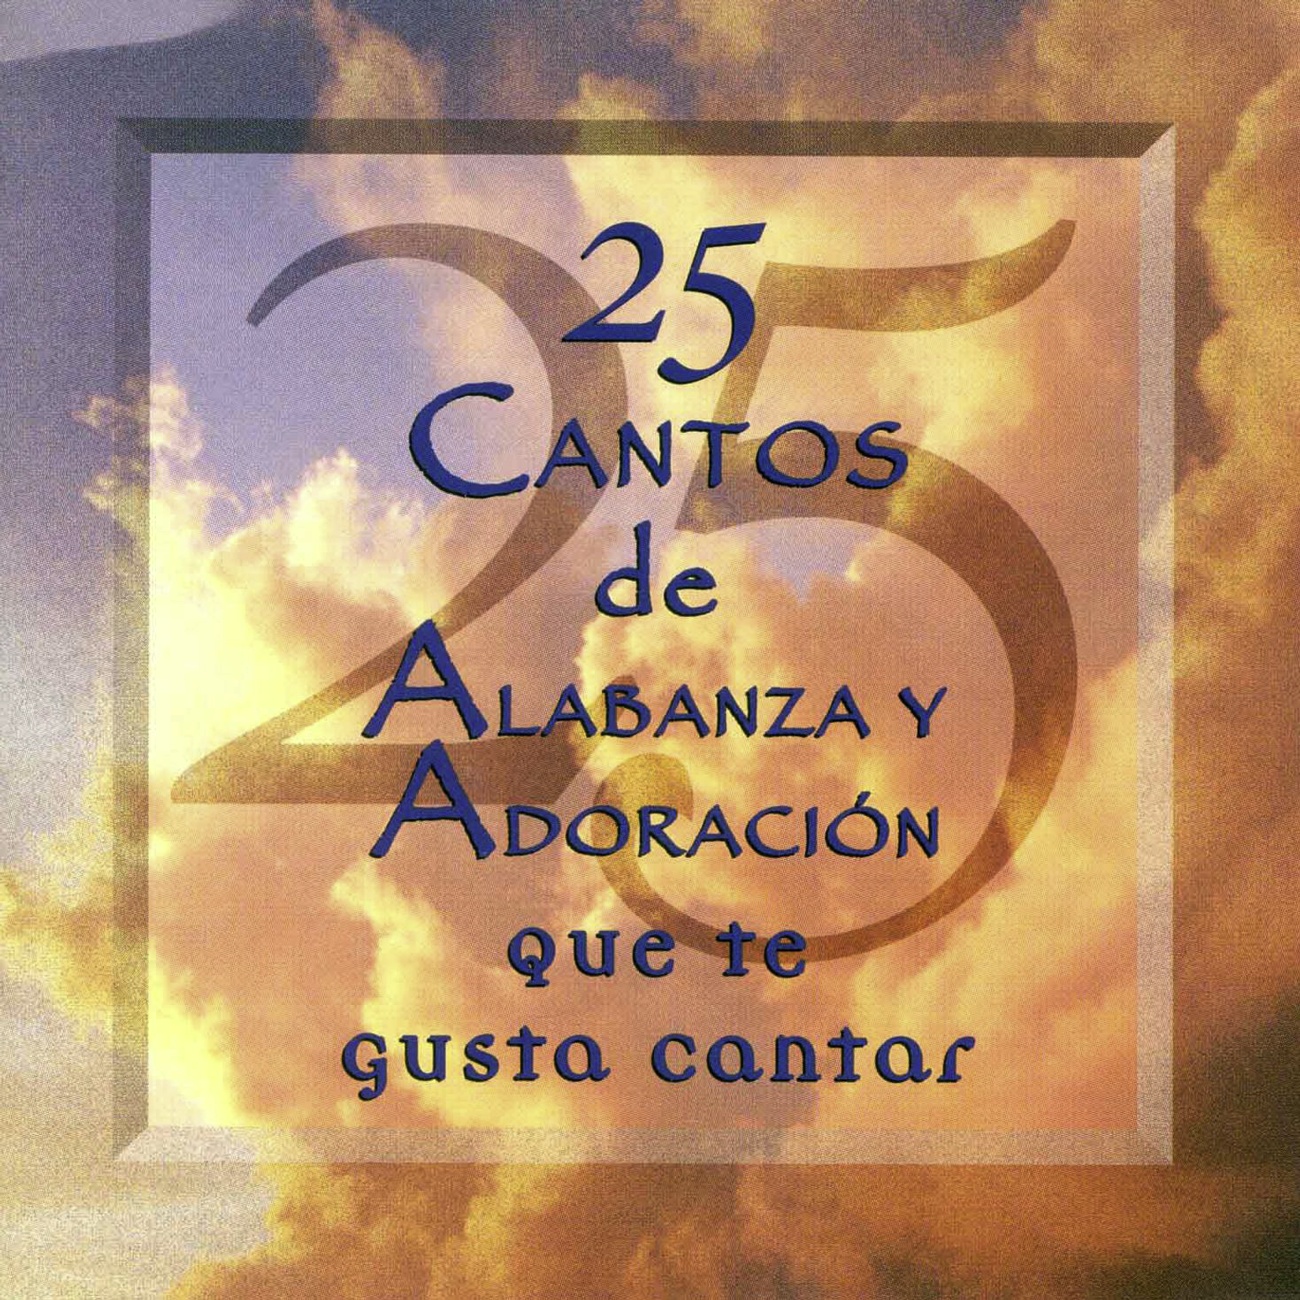 Sing To The Lord A New Song (25 Cantos de Alabanza Y Adoracion Album Version)